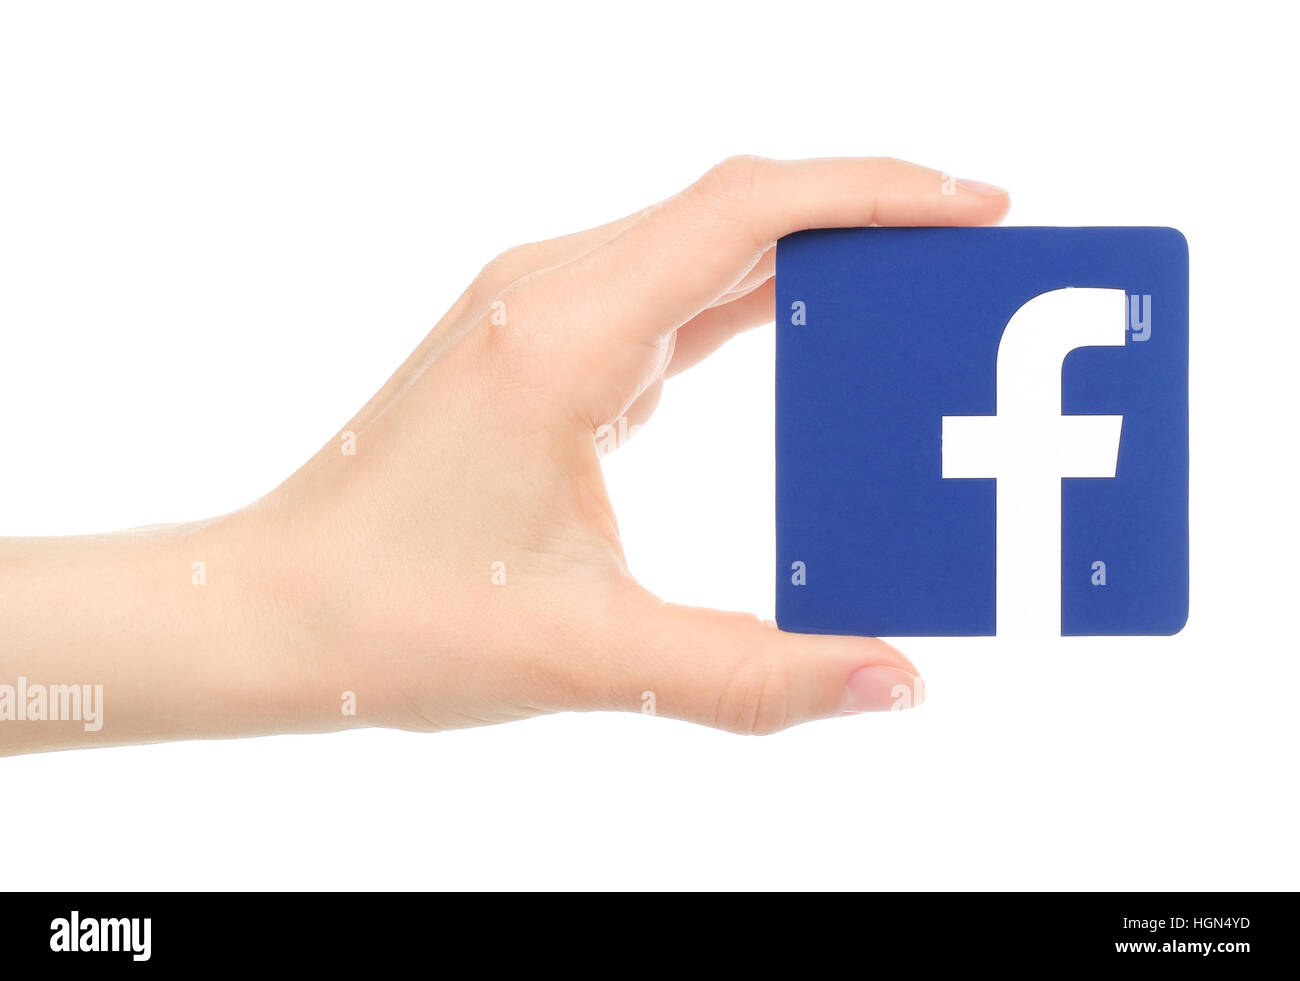 Kiew, Ukraine - 18. Mai 2016: Hand hält Facebook Logo auf Papier auf weißem Hintergrund gedruckt. Facebook ist eine bekannte Sozialnetzwerkanschlußservice. Stockfoto